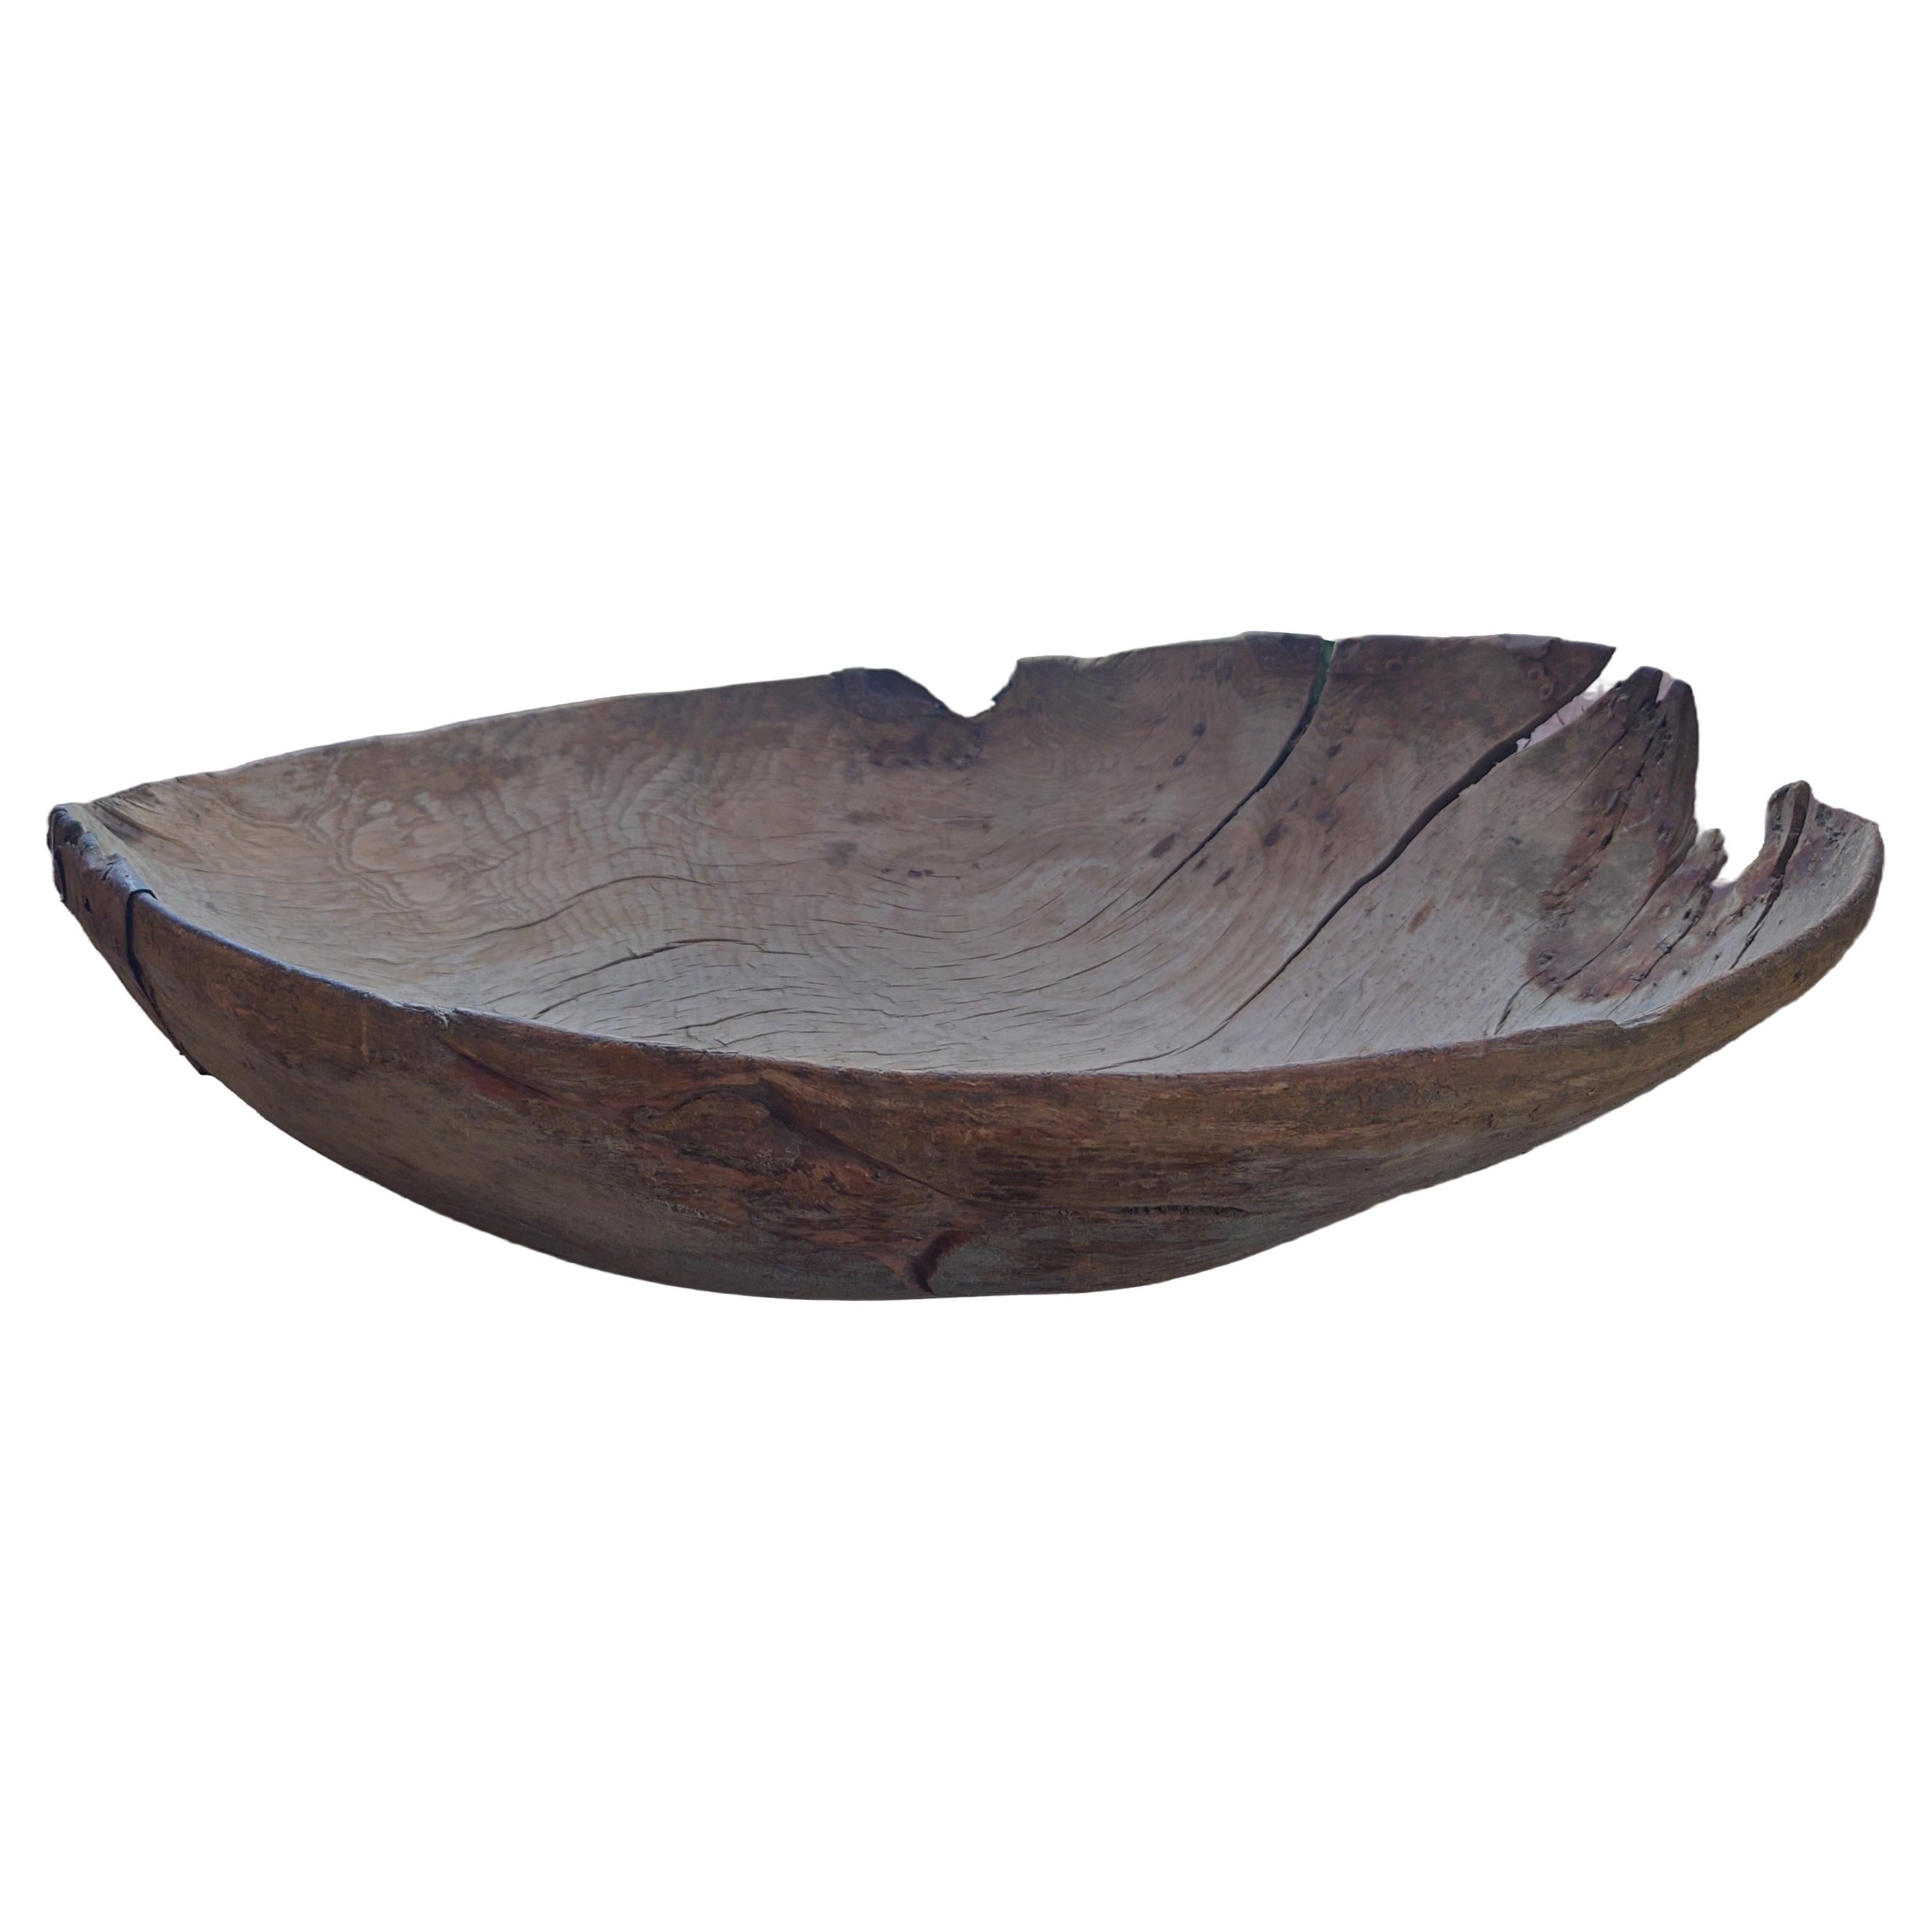 Eine außergewöhnlich große, seltene, ovale, geschnitzte schwedische Holzknotenschale aus dem 18. Zeigt eine trockene, strukturierte Oberfläche mit einer erstaunlichen, gealterten Patina. Ein wirklich bemerkenswertes Werk. Die Schale hat eine schöne